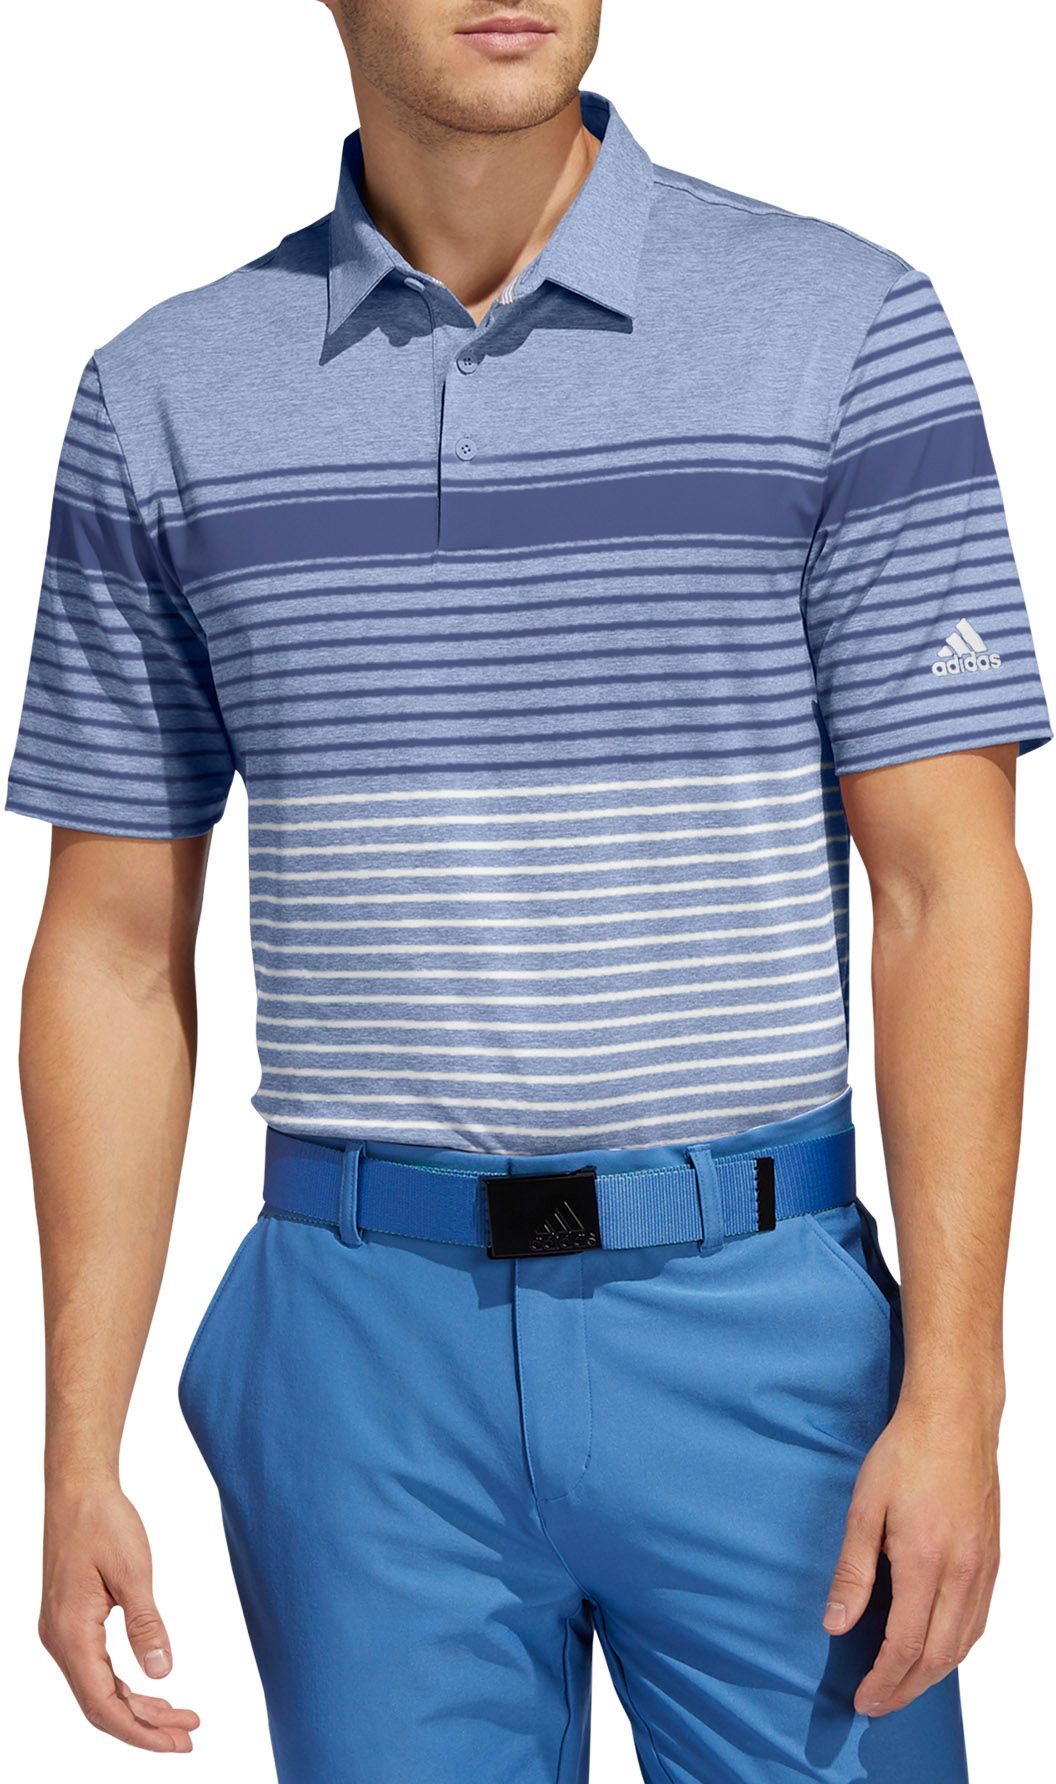 adidas men's ultimate365 logo golf polo